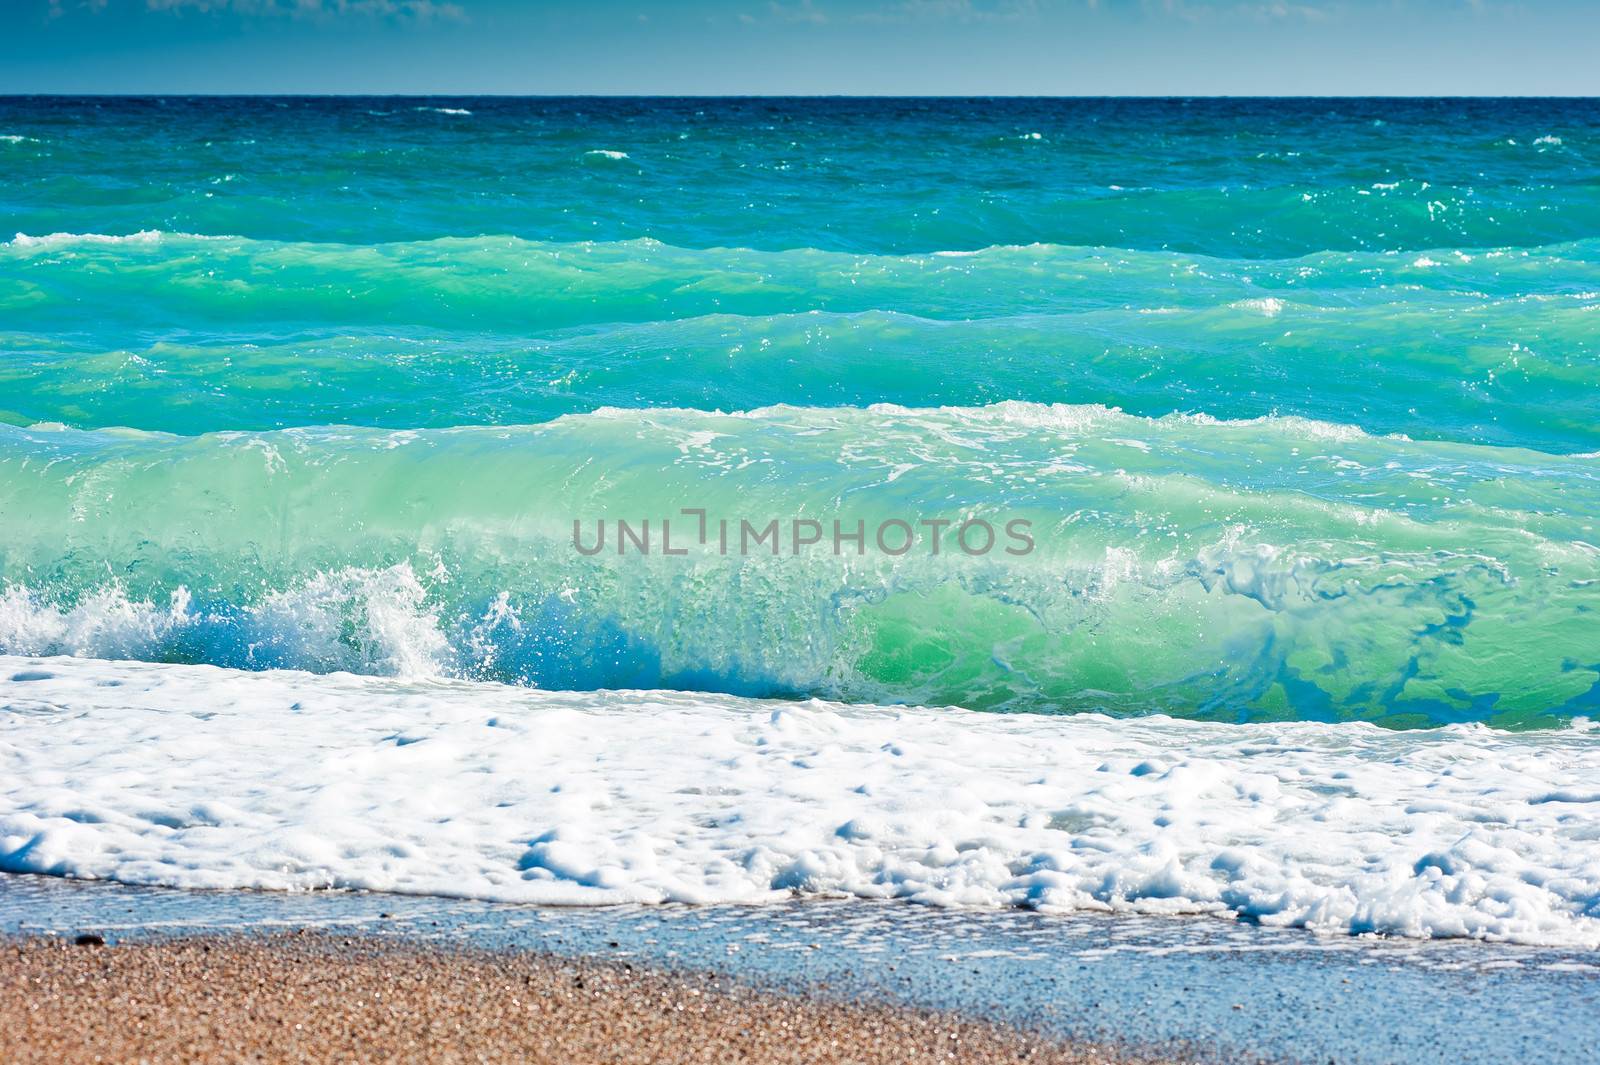 Splash of sea foam on a sandy beach by kosmsos111